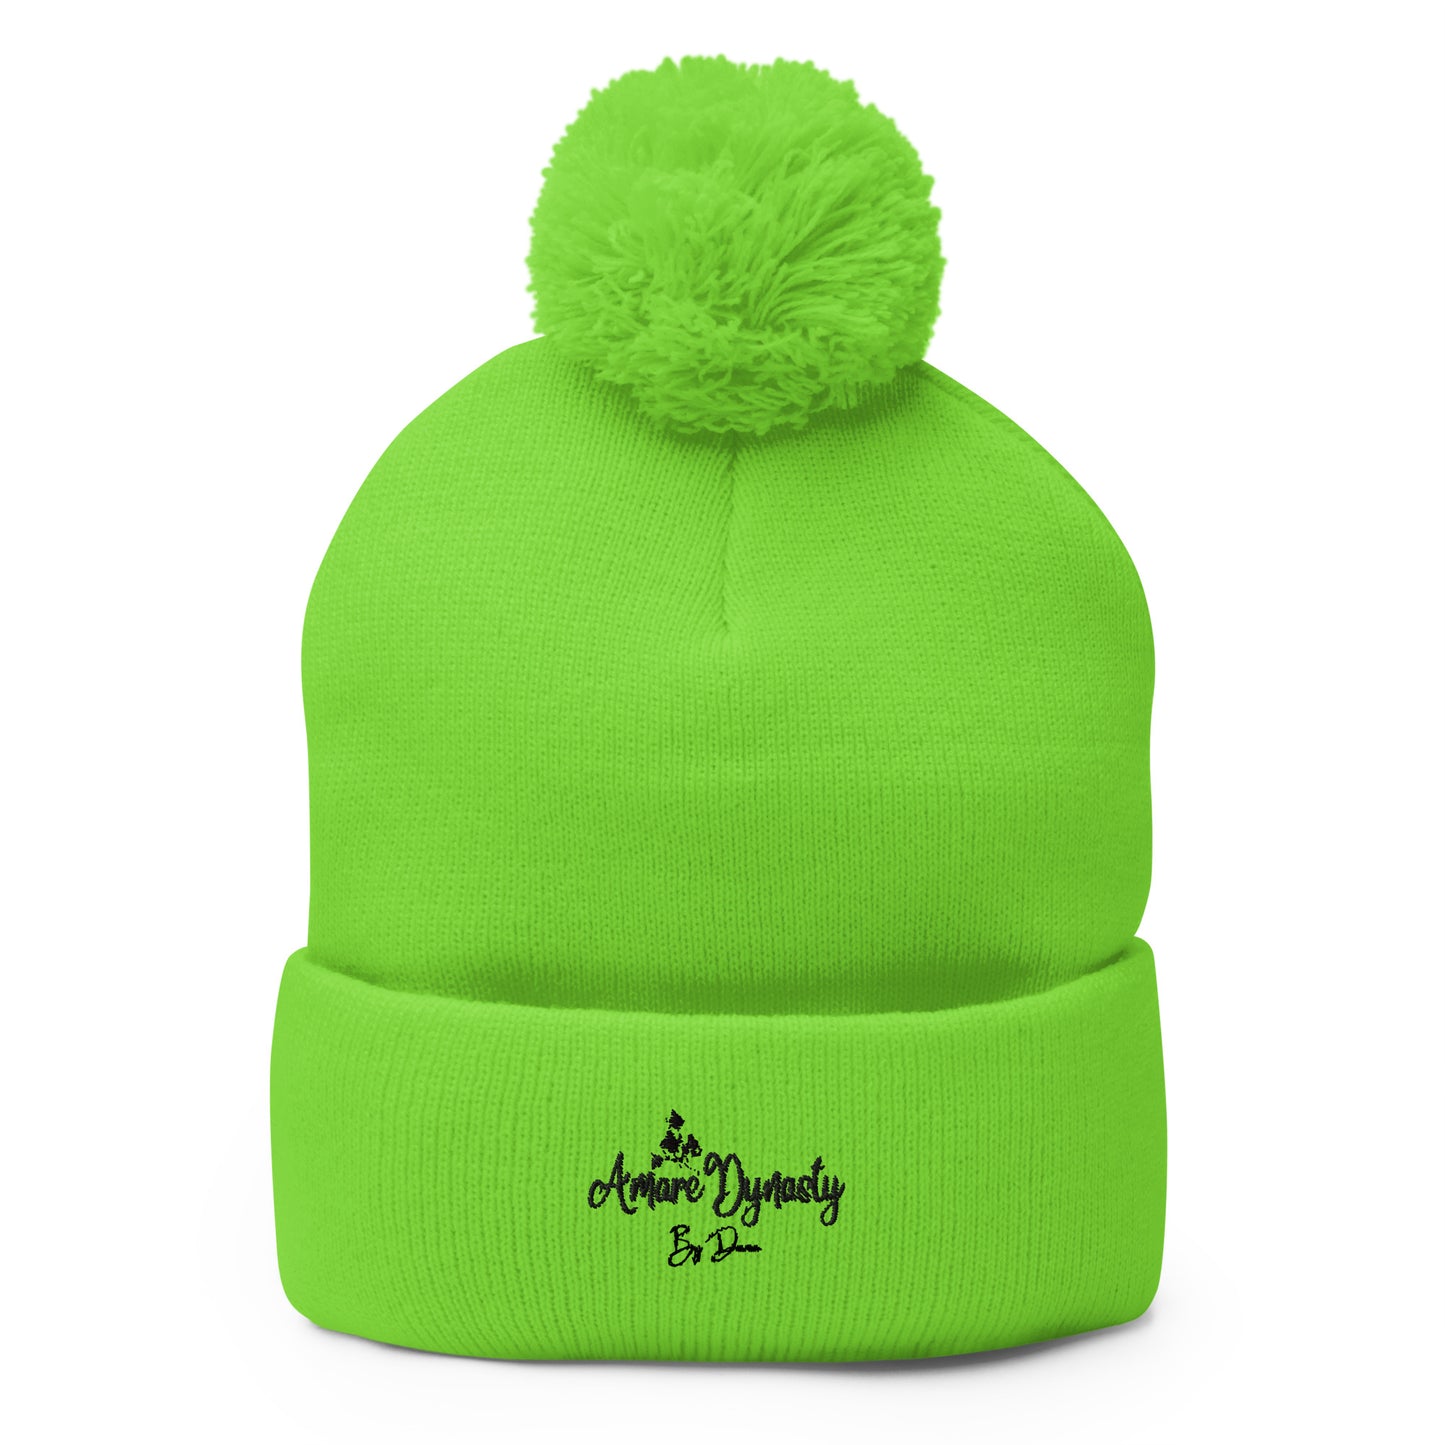 neon green hat